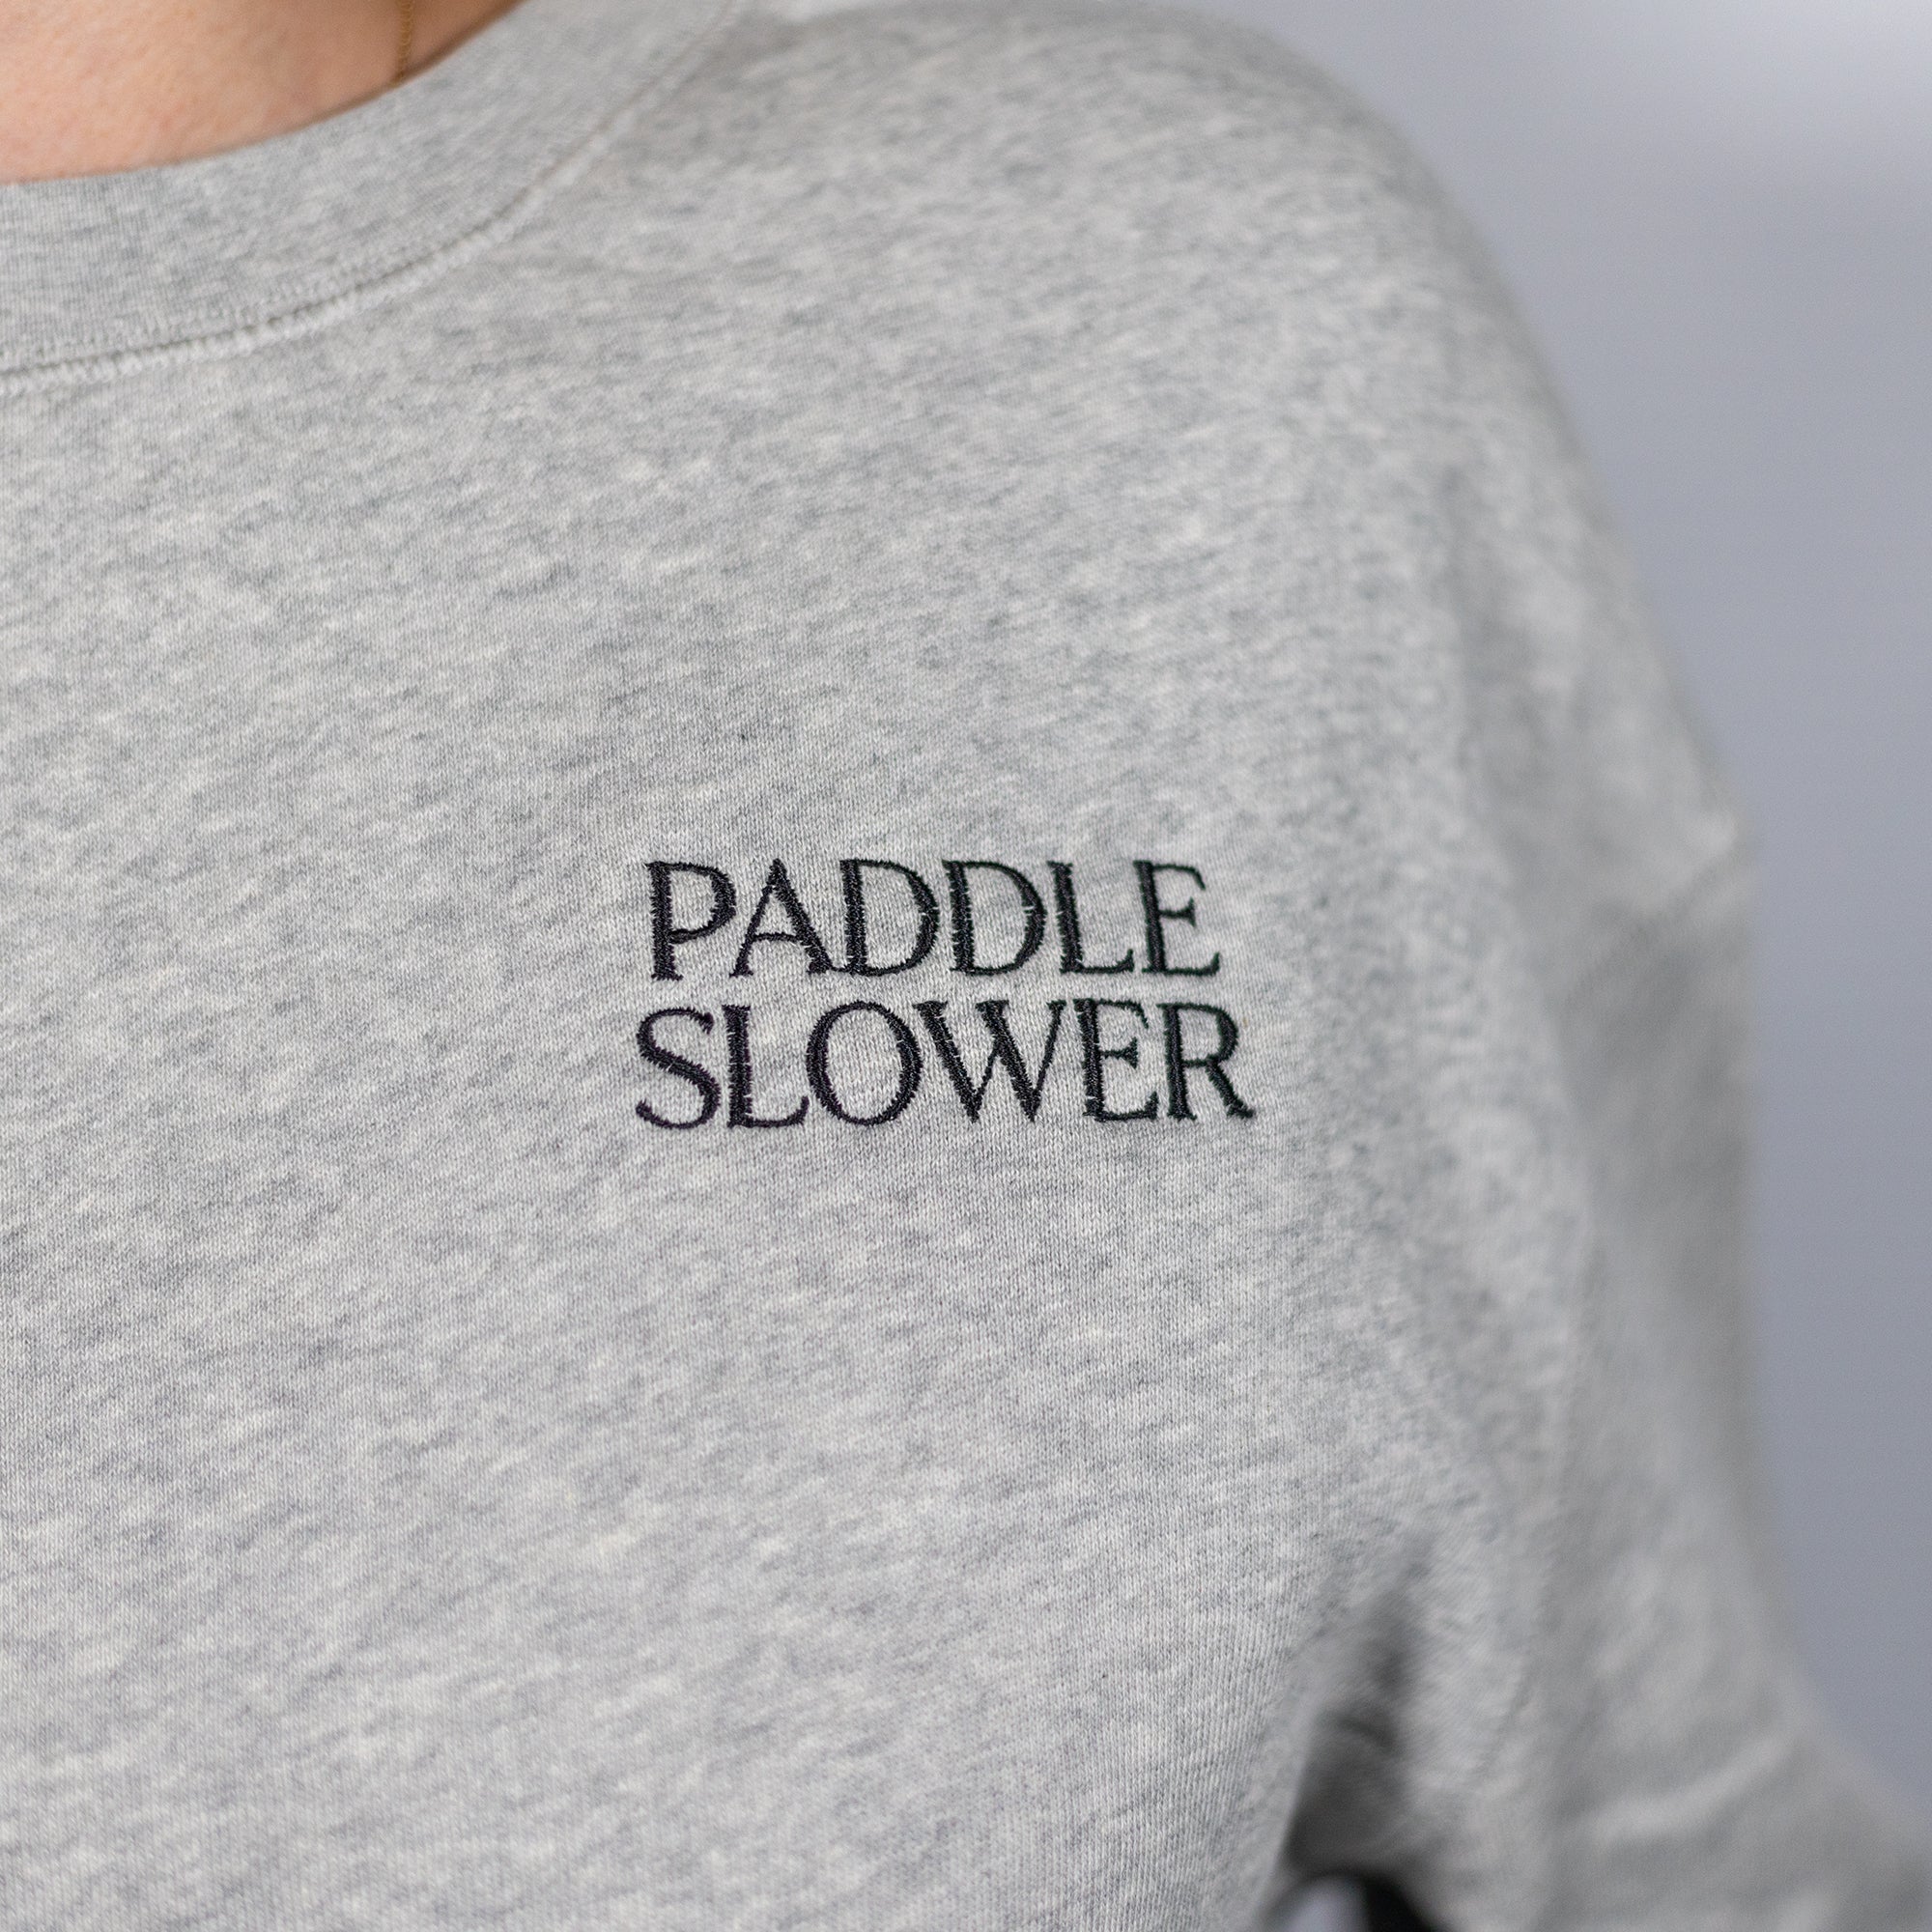 Cracked Canoe Paddle Slower Sweatshirt